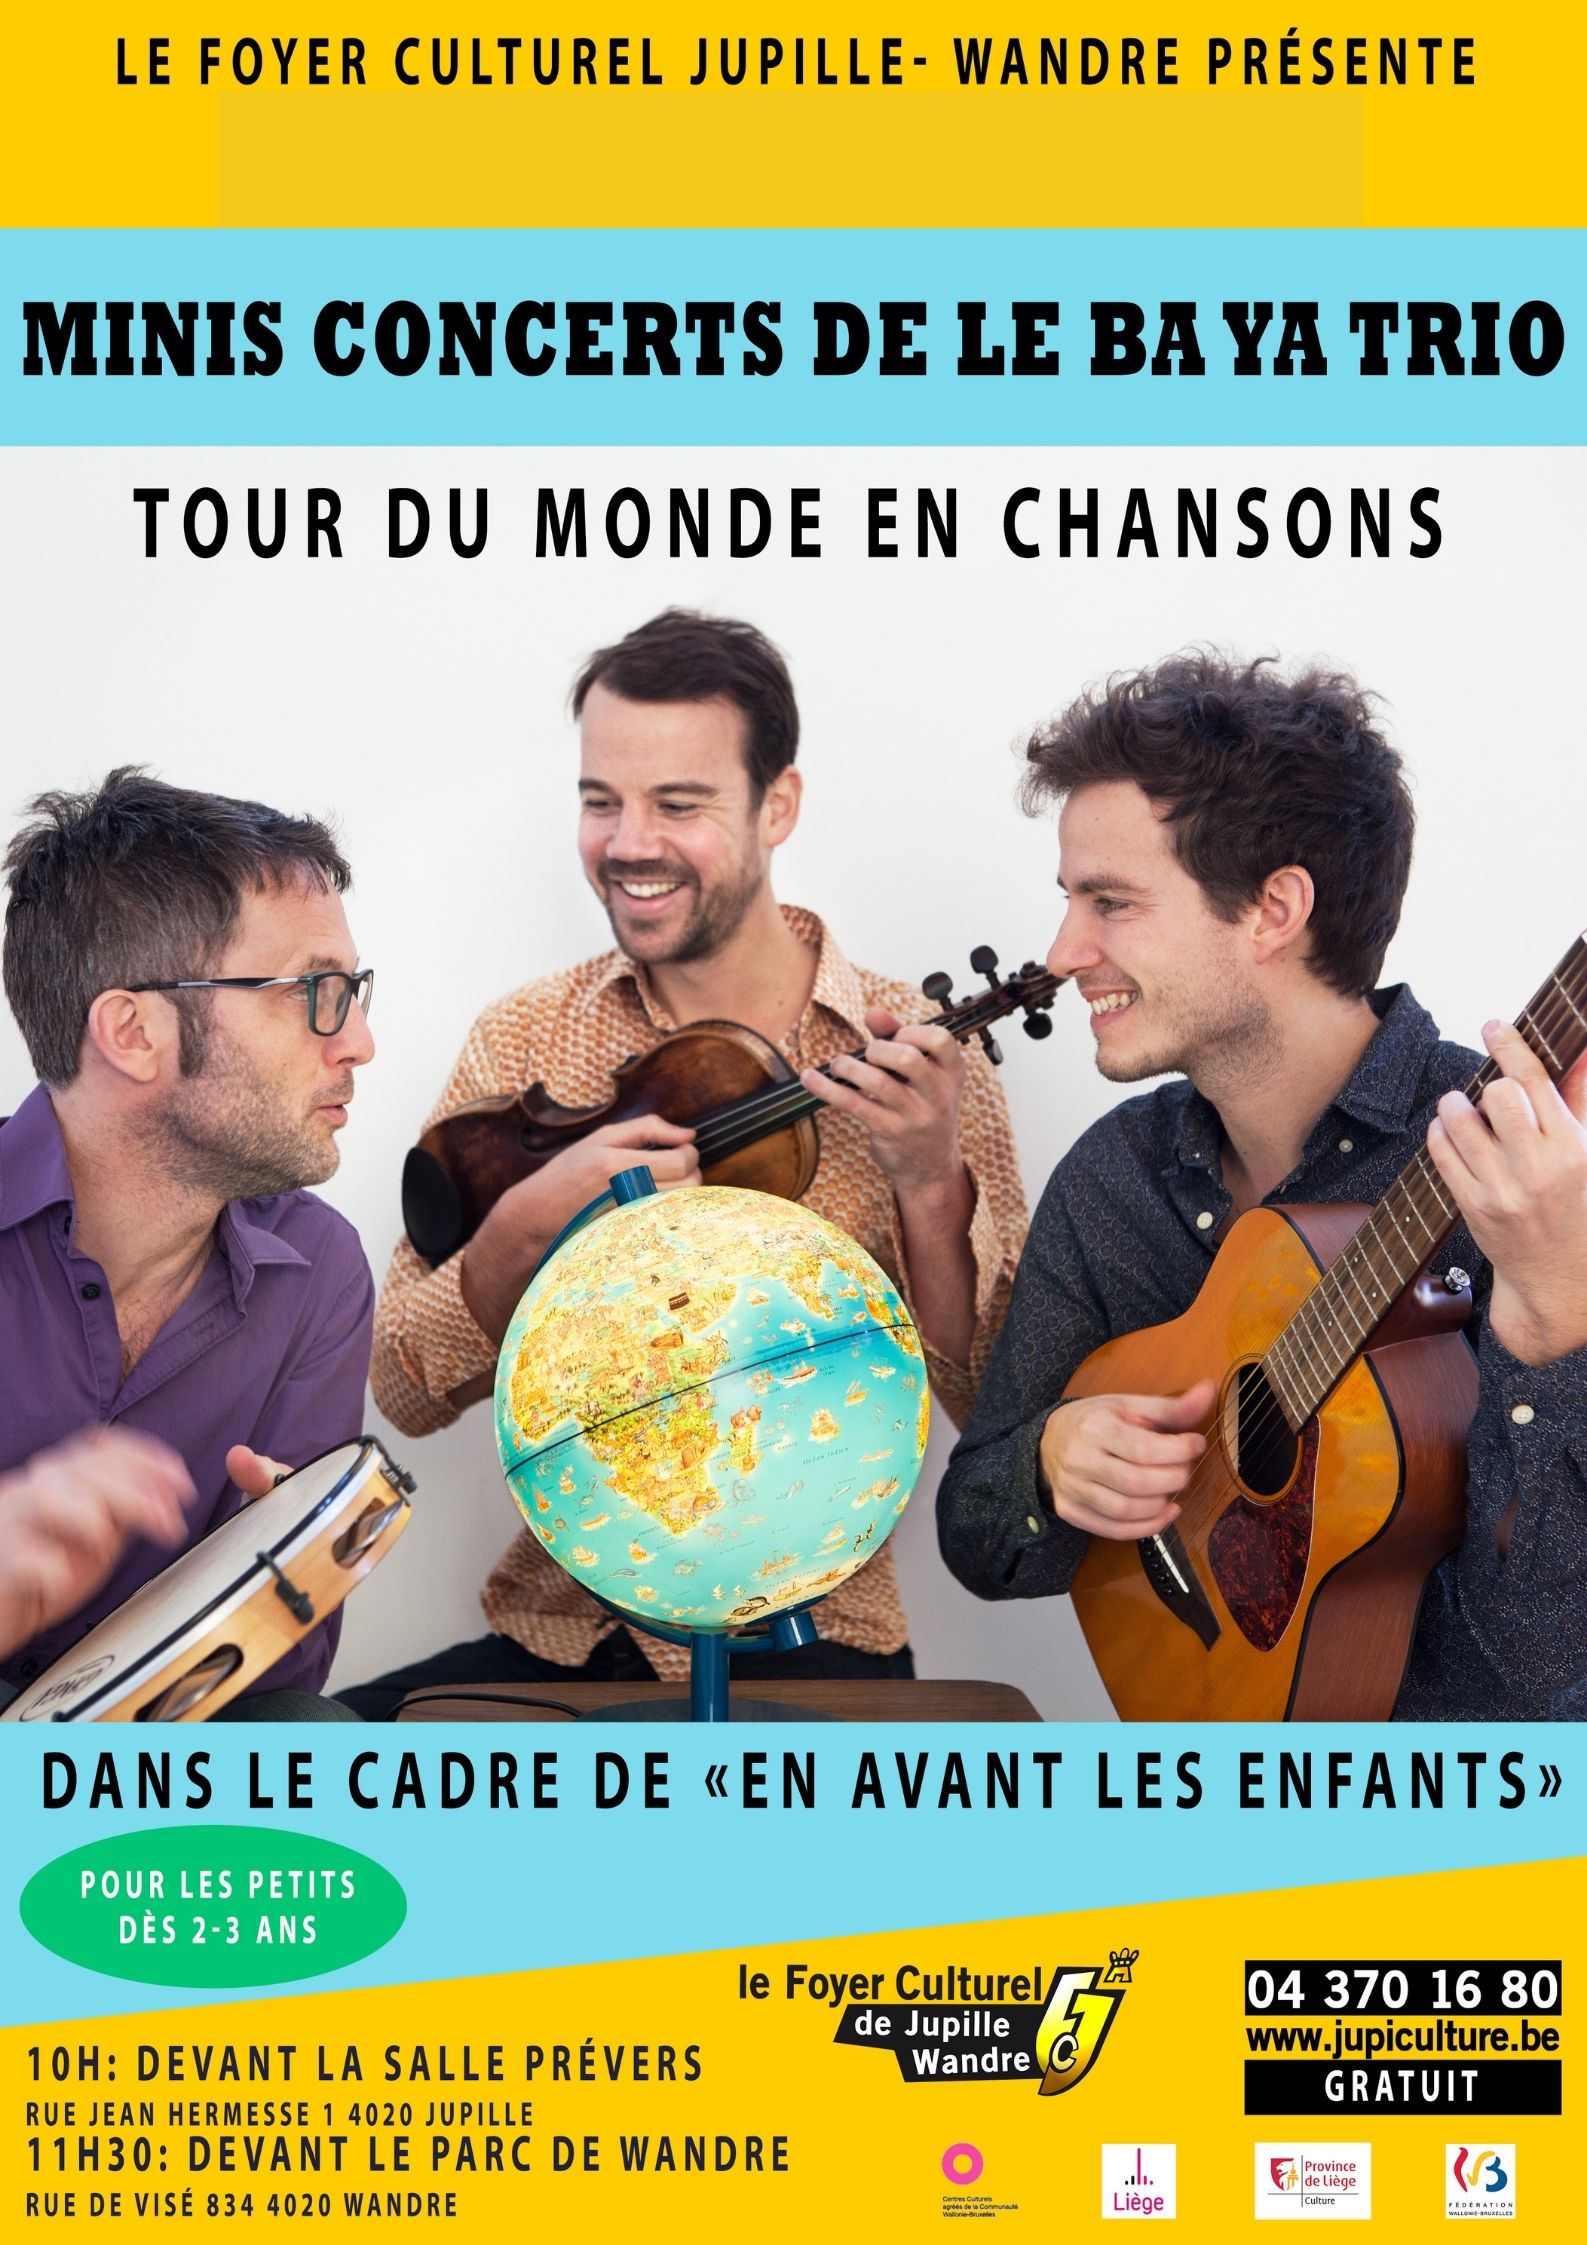 Tour du Monde en chansons - Concert de Le Ba Ya Trio au Foyer culturel de Jupille-Wandre